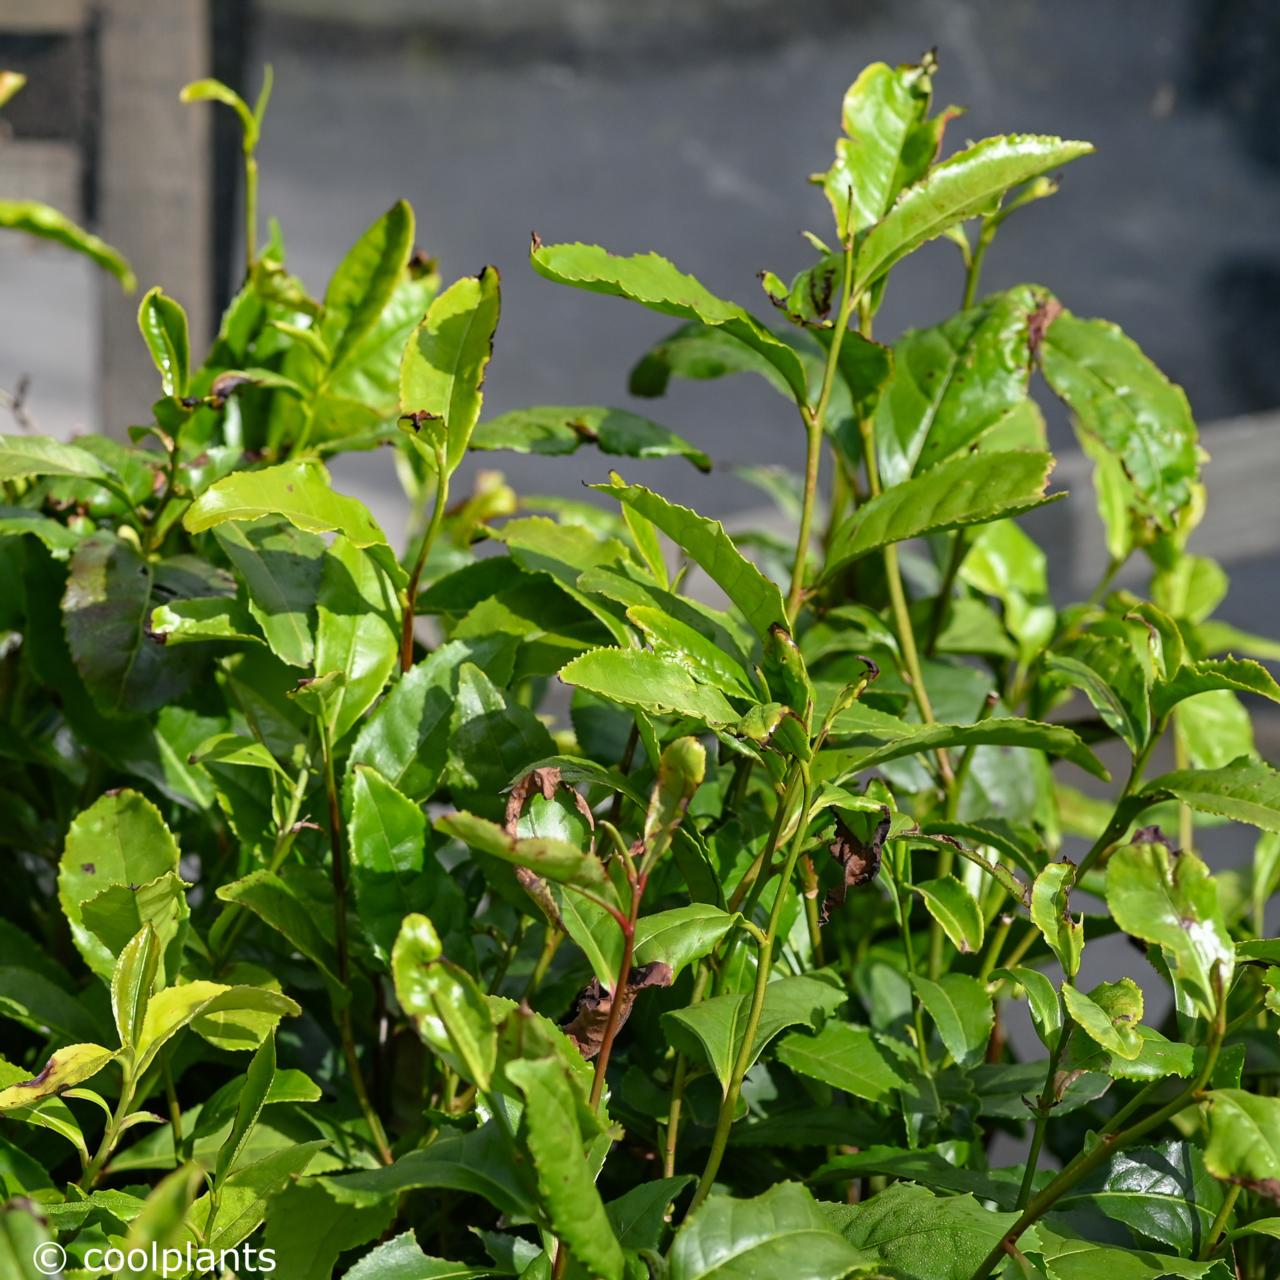 camellia sinensis - kaufen sie pflanzen bei coolplants